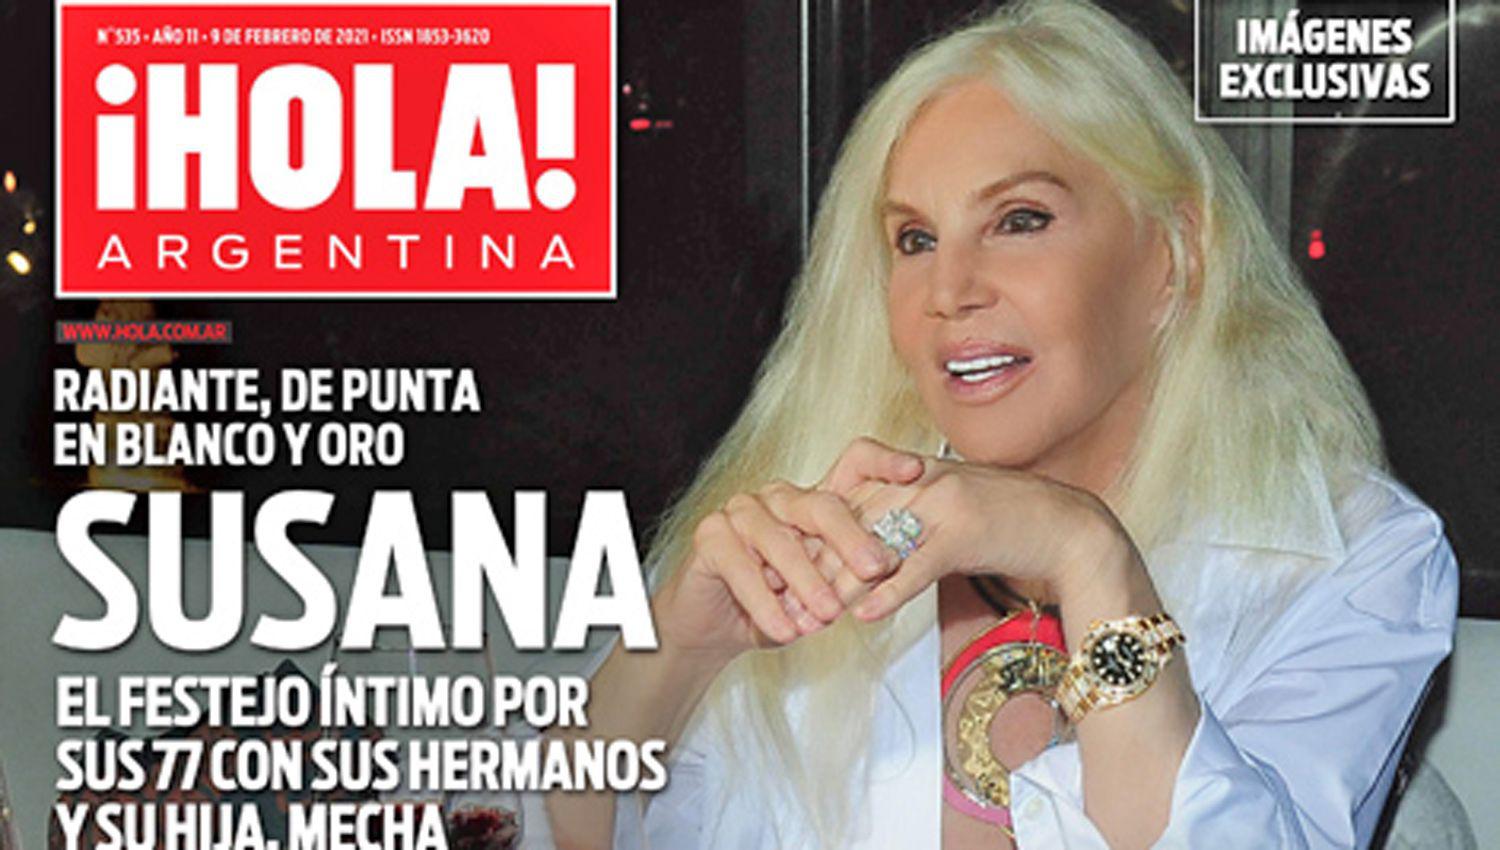 Susana festejoacute sus 77 antildeos y lo compartioacute con iexclHOLA Argentina